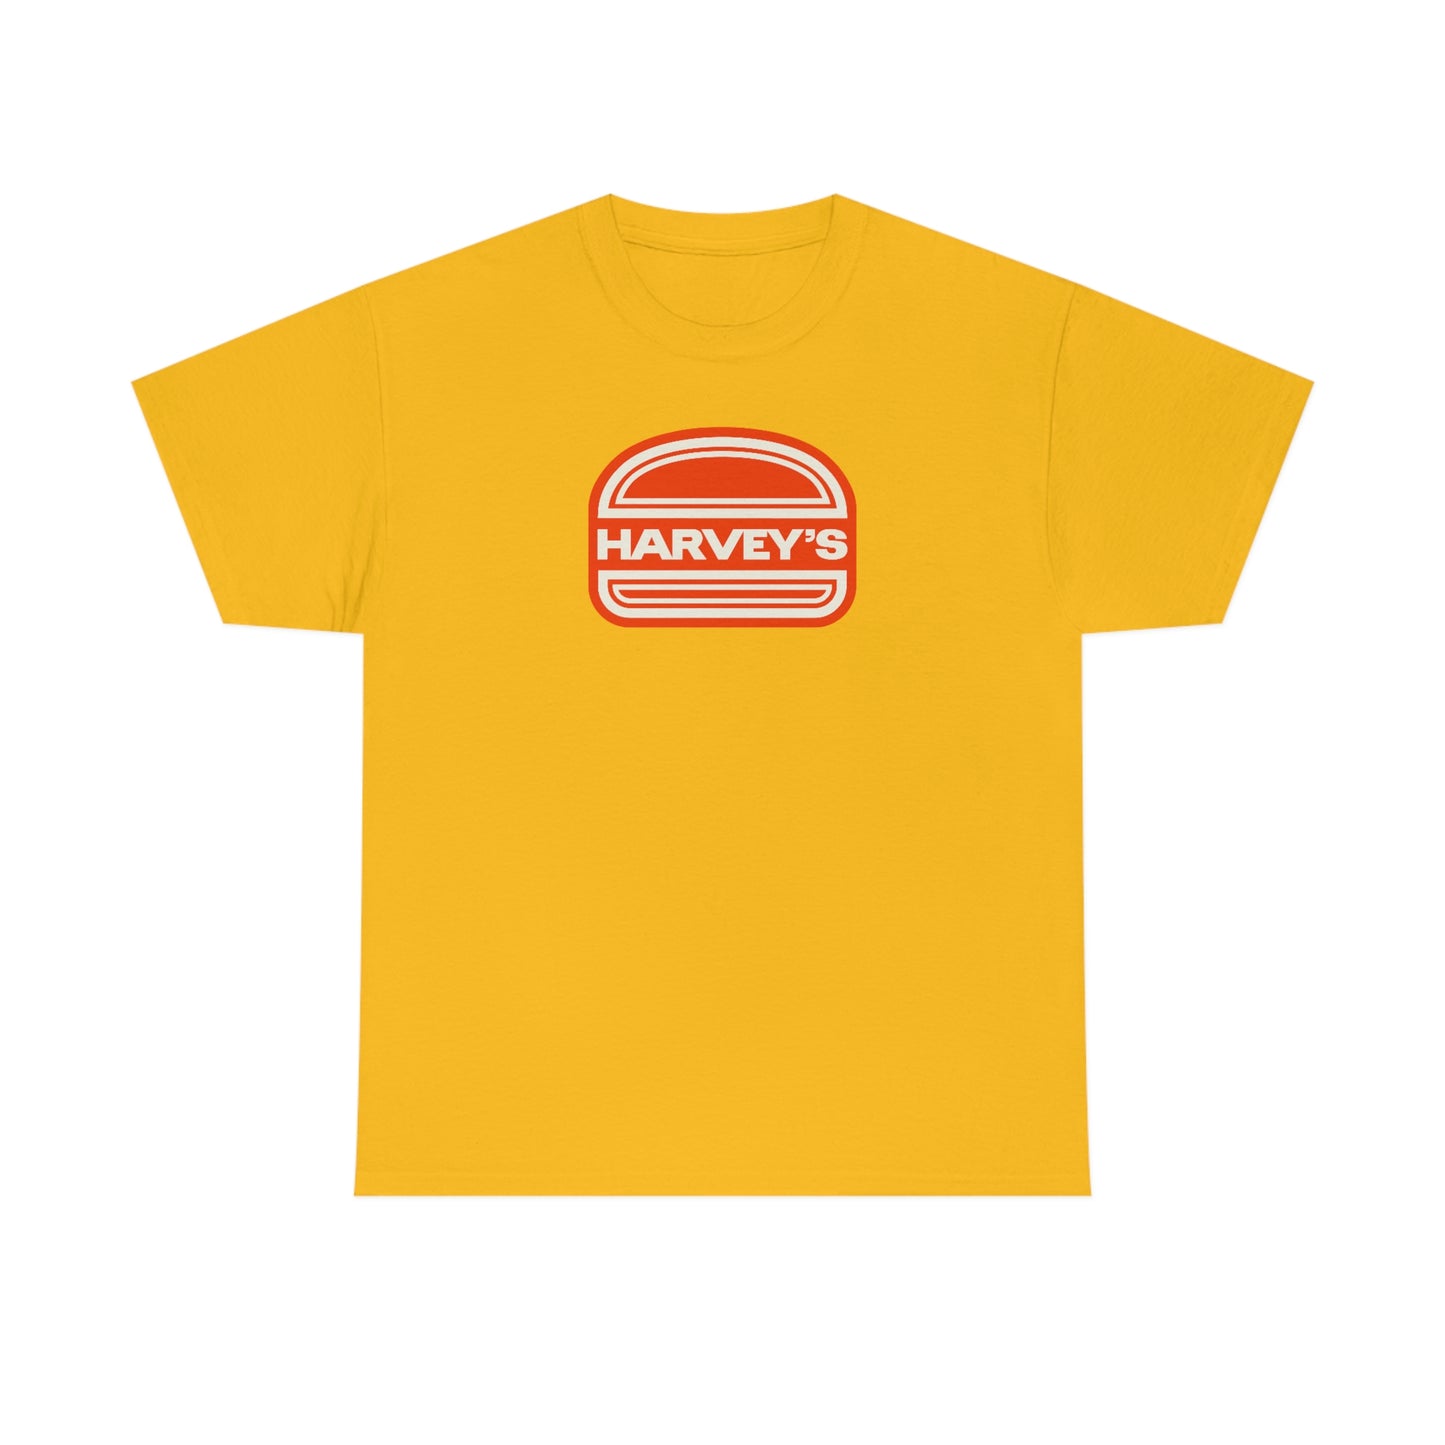 Harvey's Retro T-Shirt